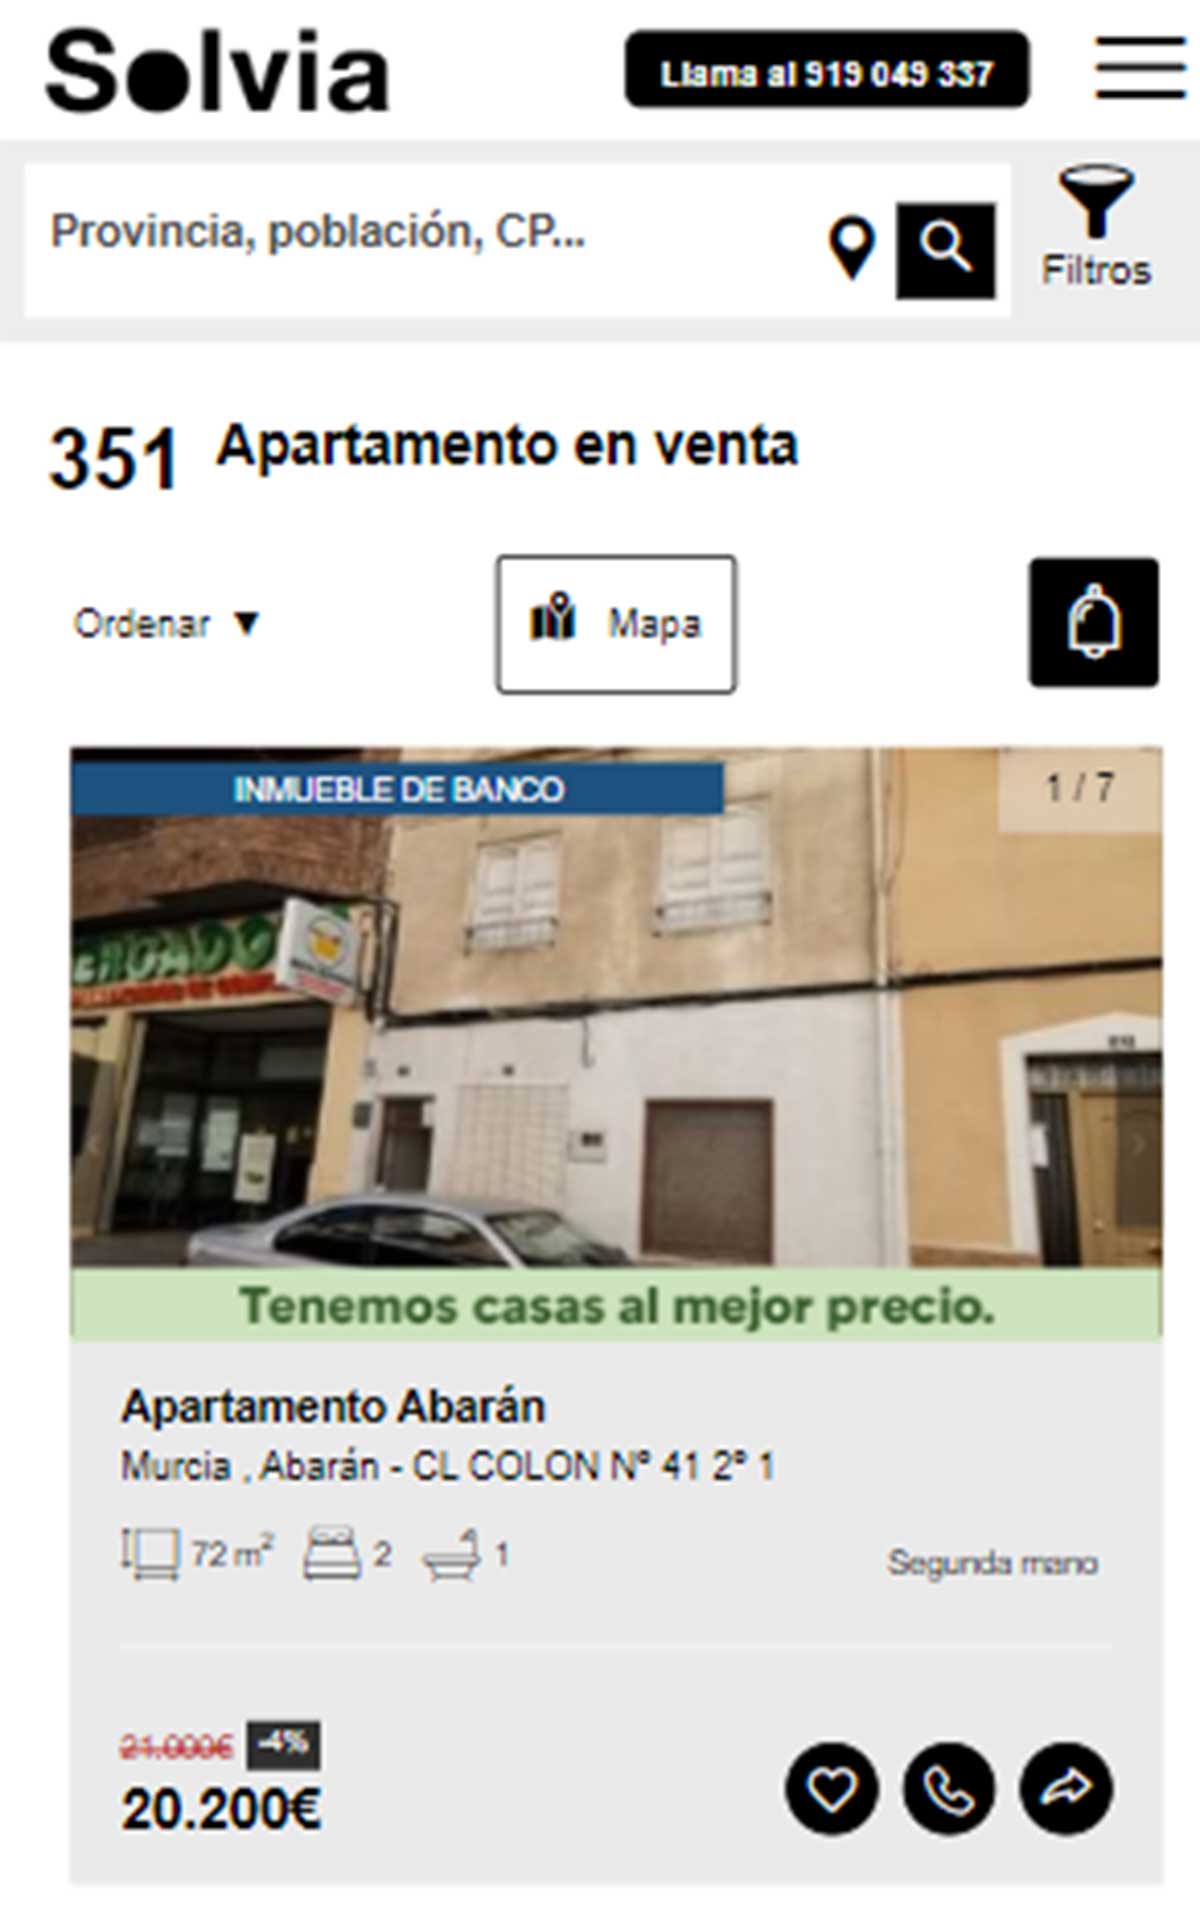 Apartamento a la venta por 20.200 euros